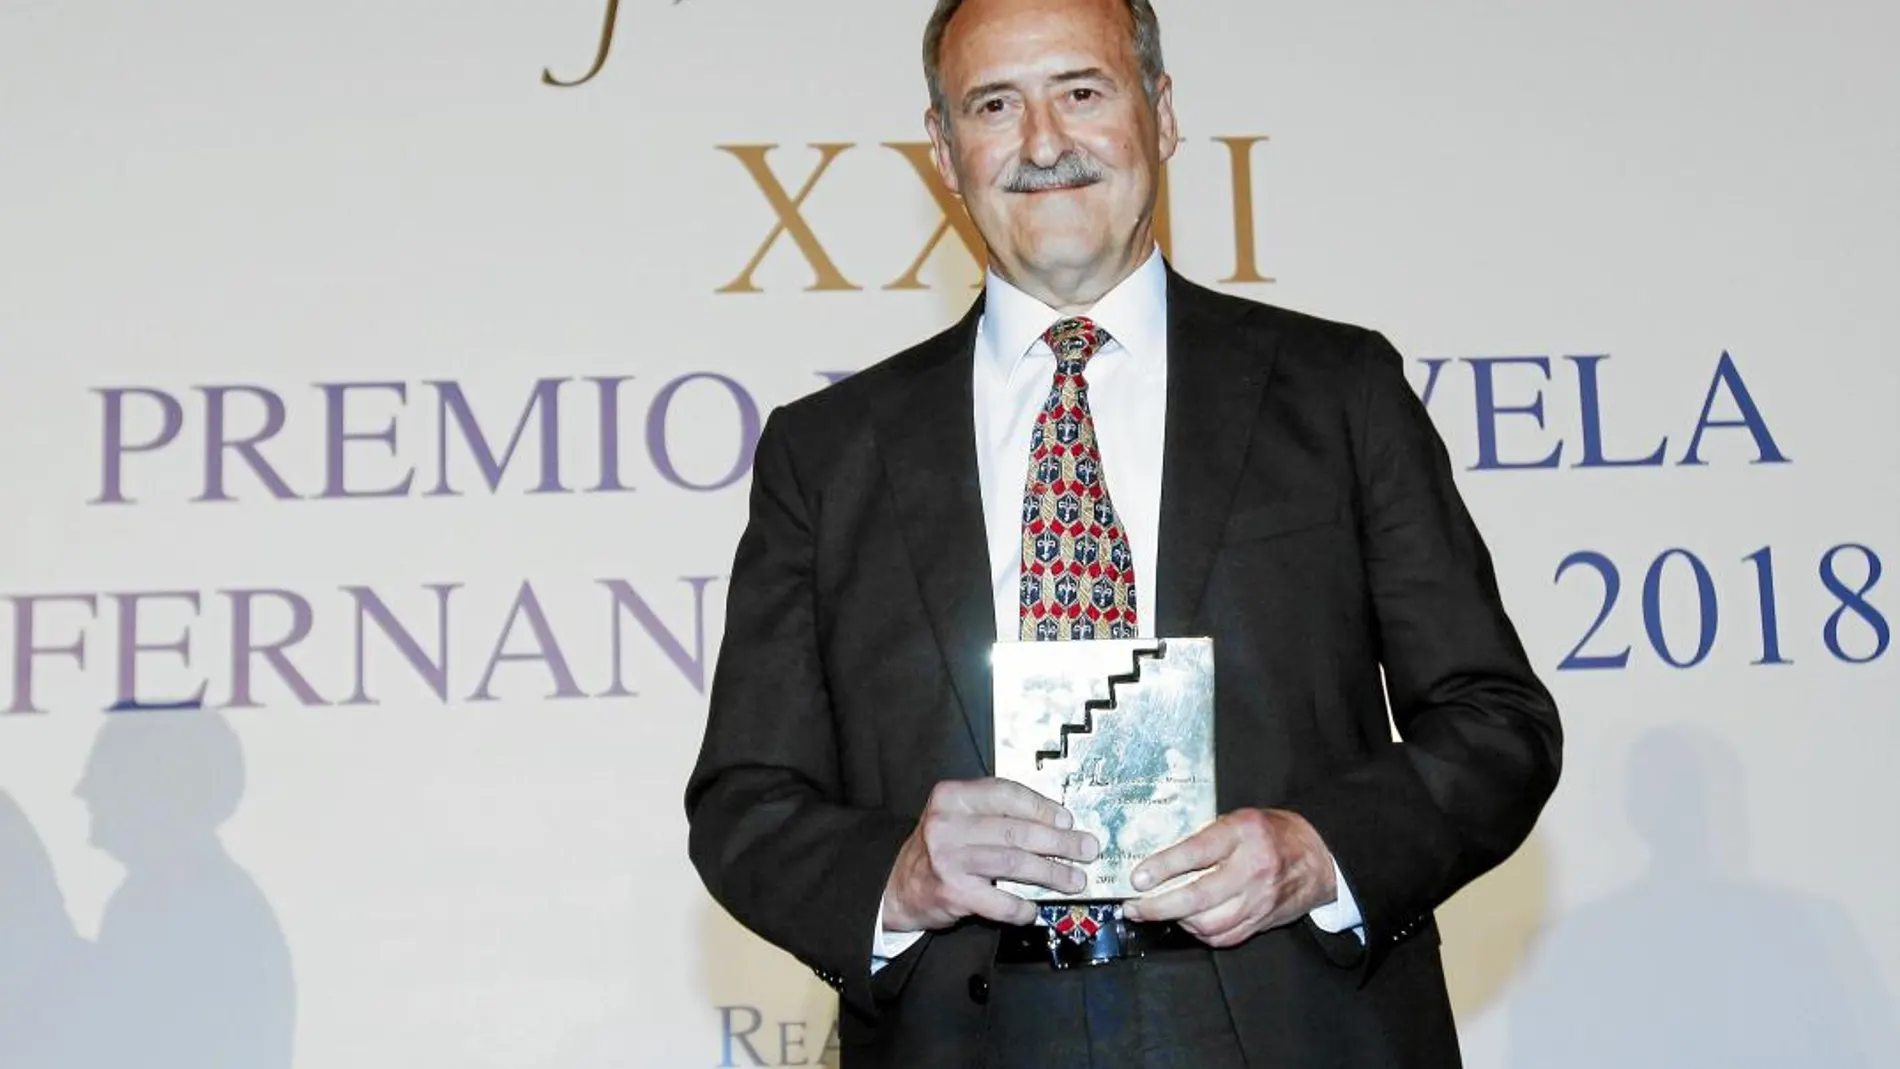 Jorge Molist emprendió su camino literario en 2000 y, desde entonces, ha tenido un enorme éxito en la novela / Manuel Olmedo